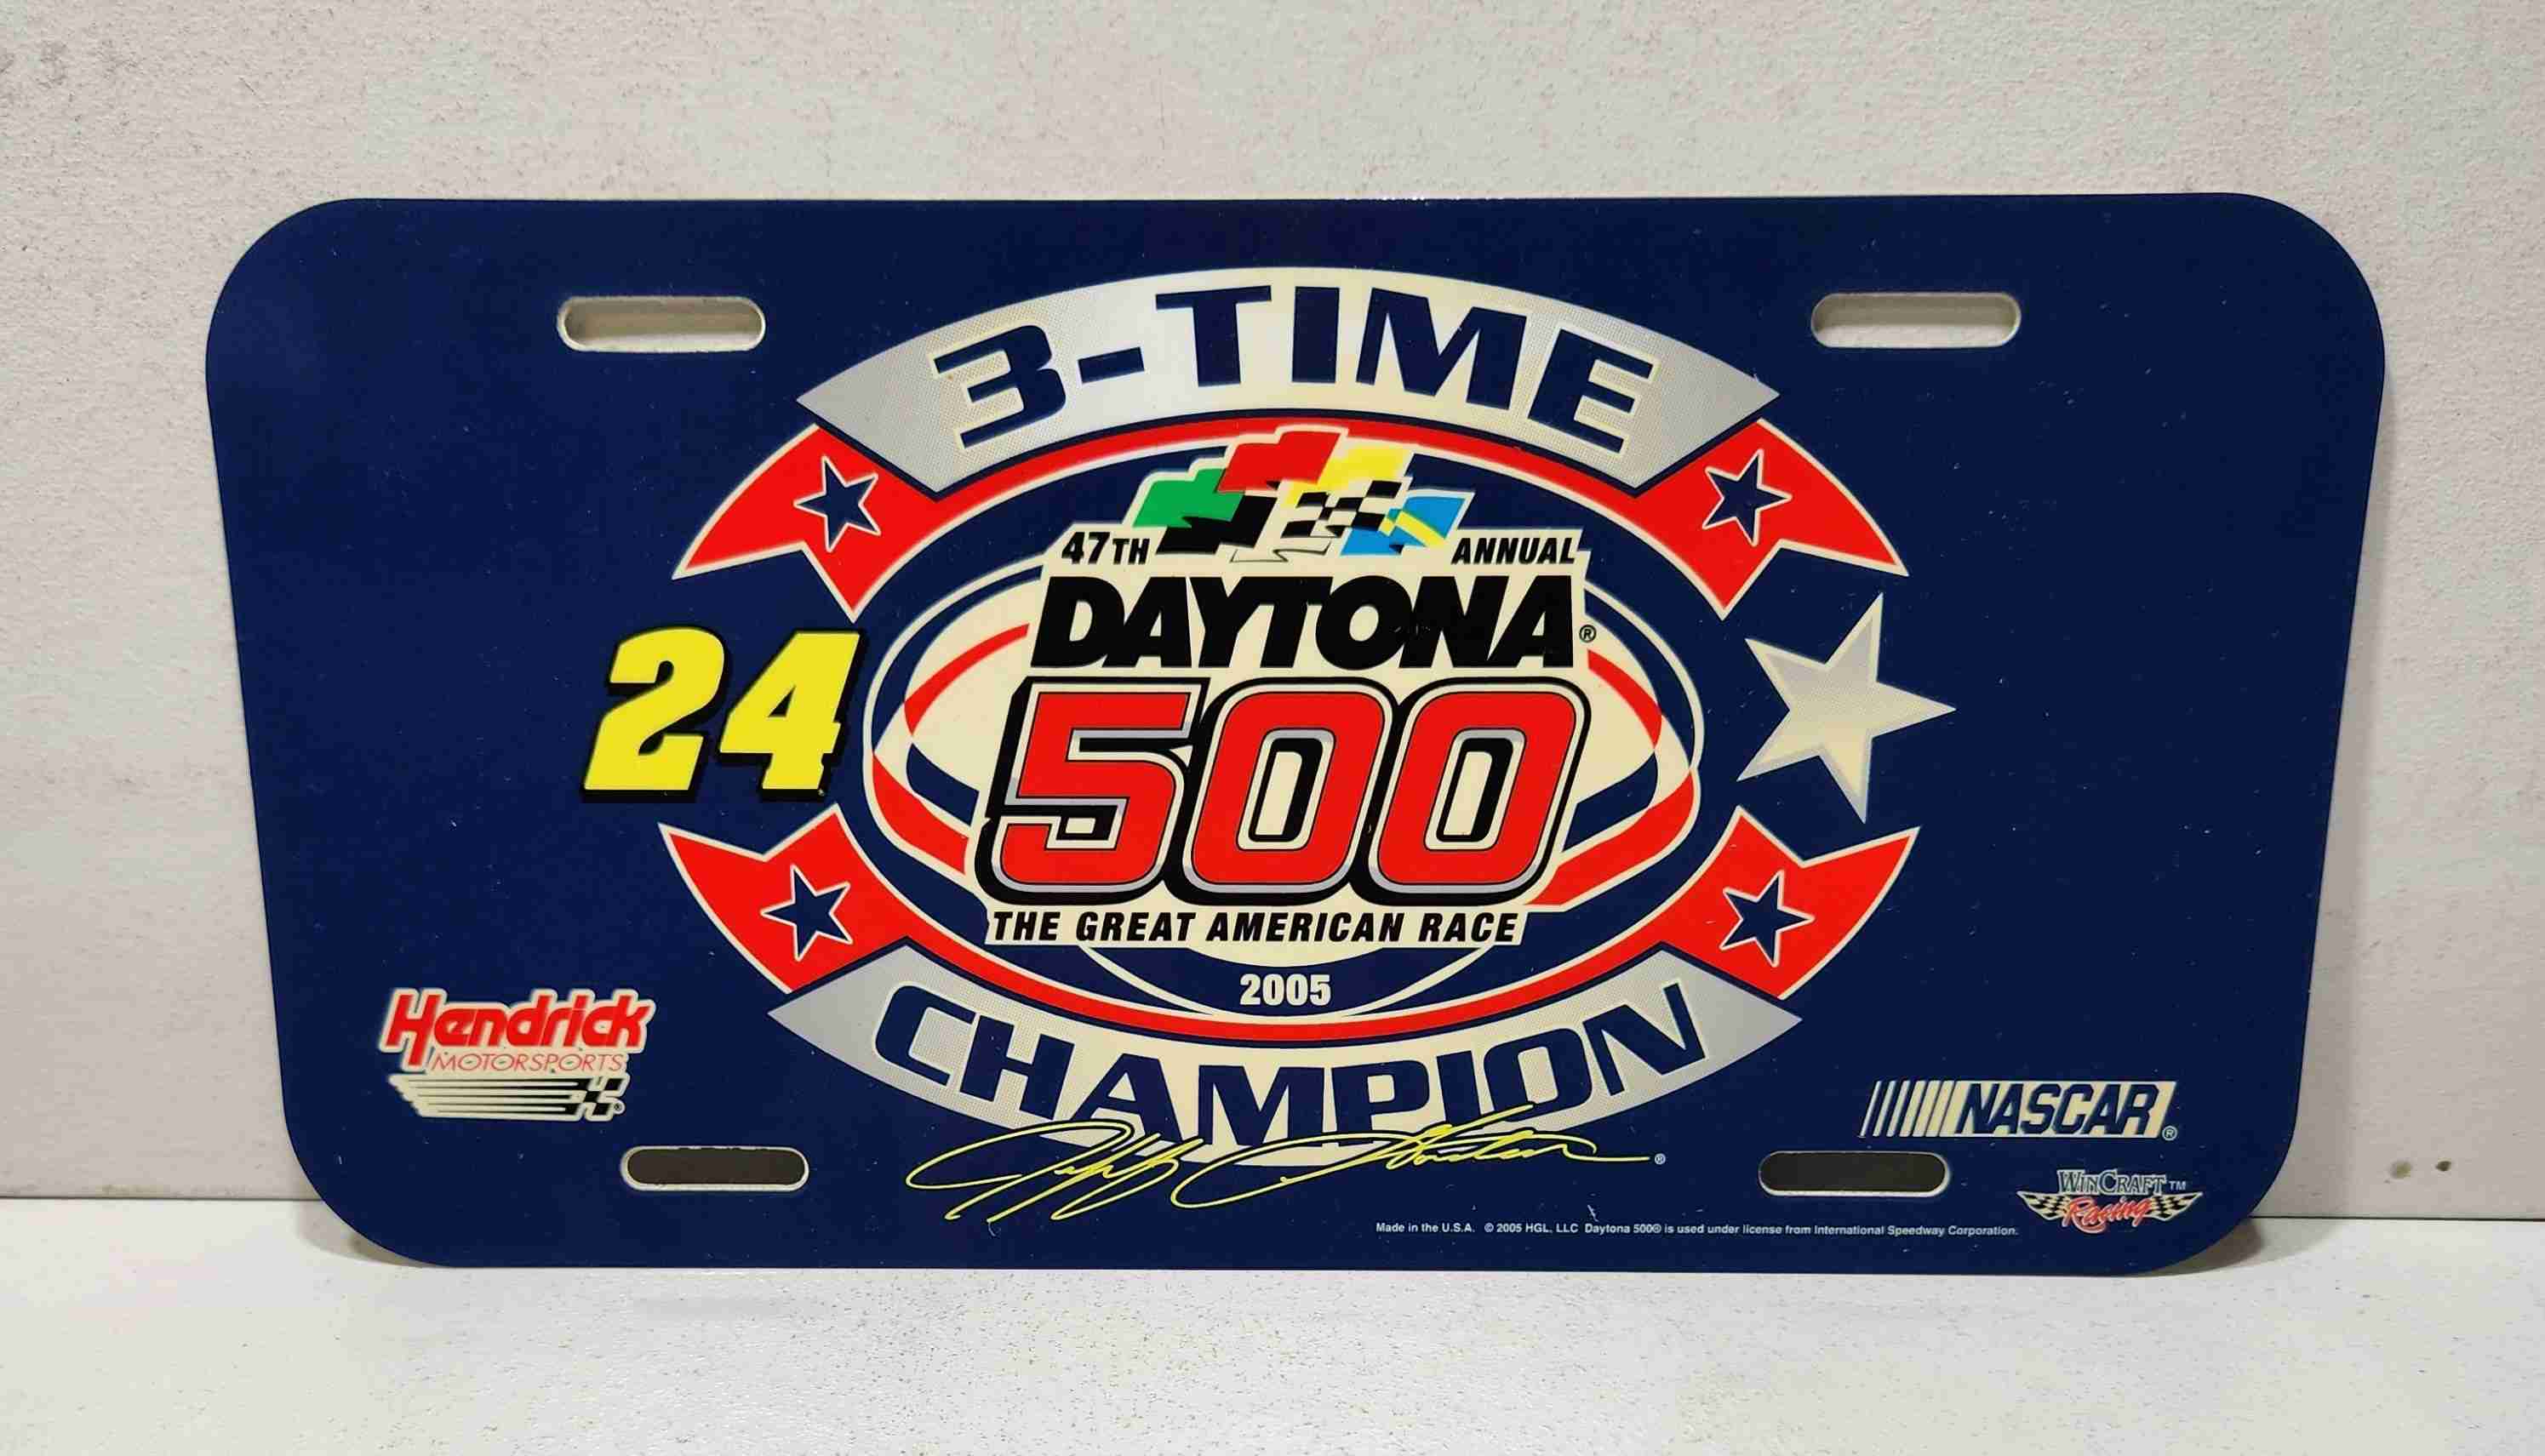 2005 Jeff Gordon 3 Time Daytona Winner plastic license plate